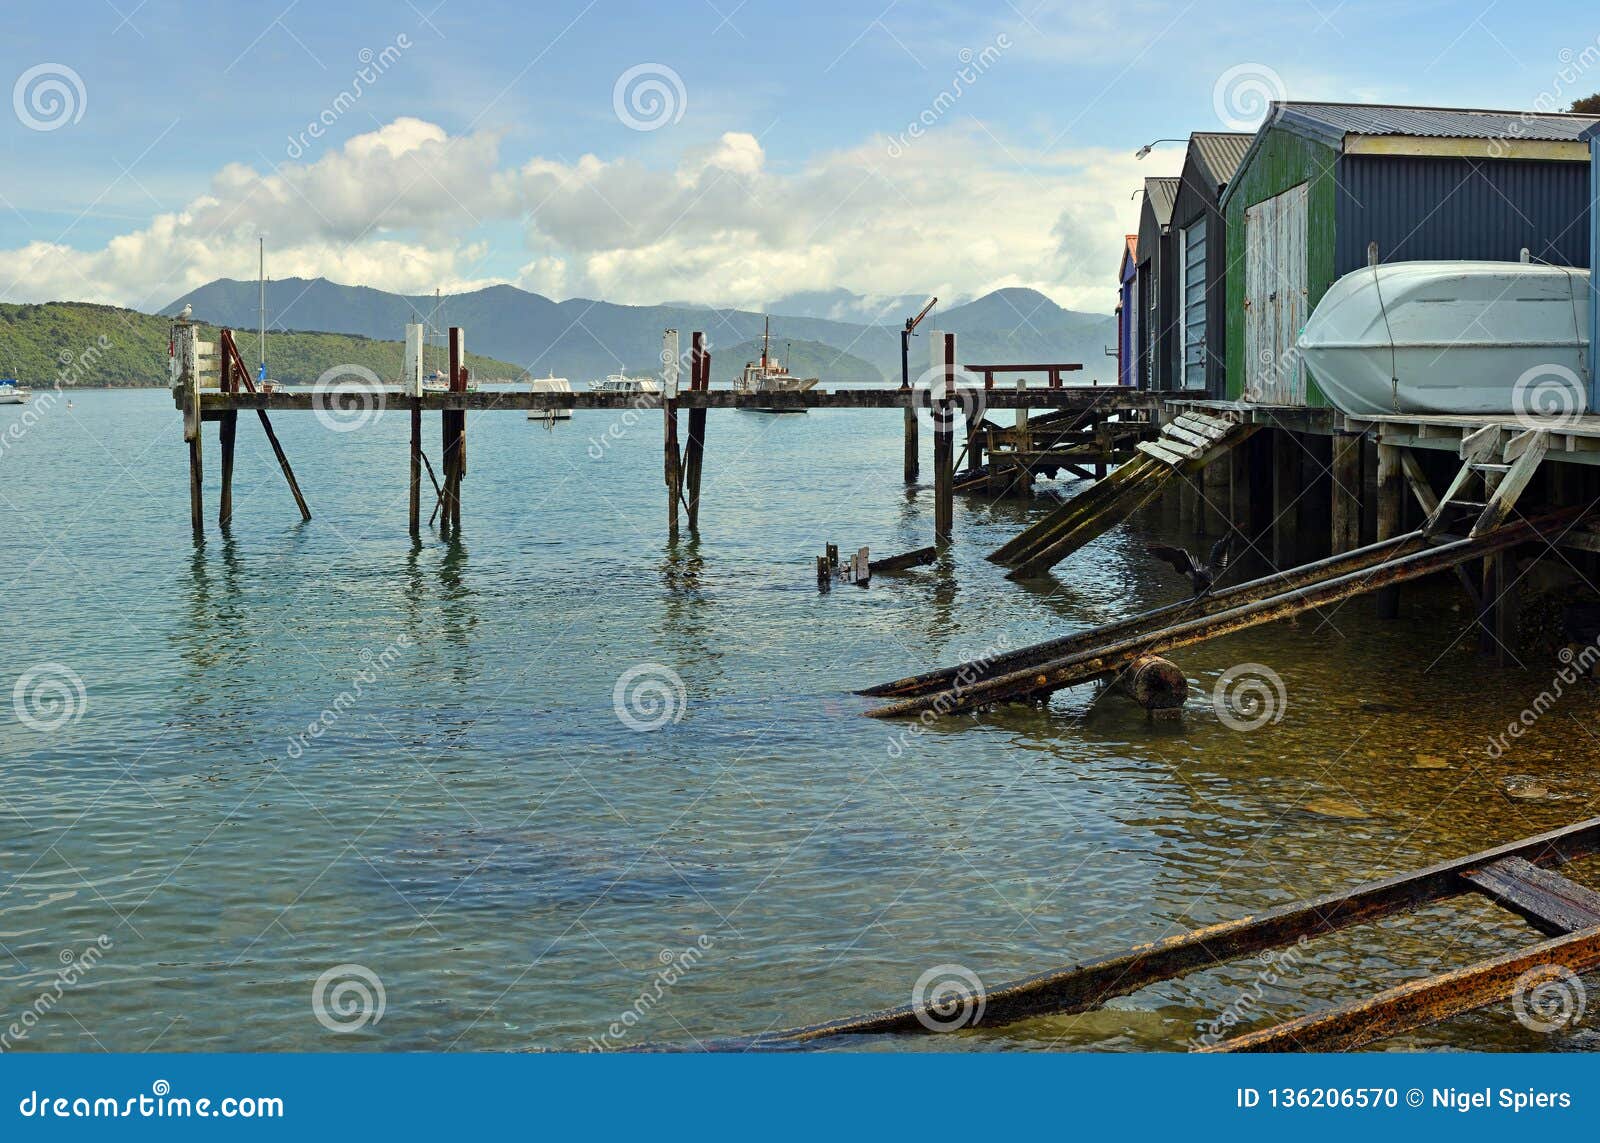 boat sheds and ramps at waikawa bay, picton, new zealand